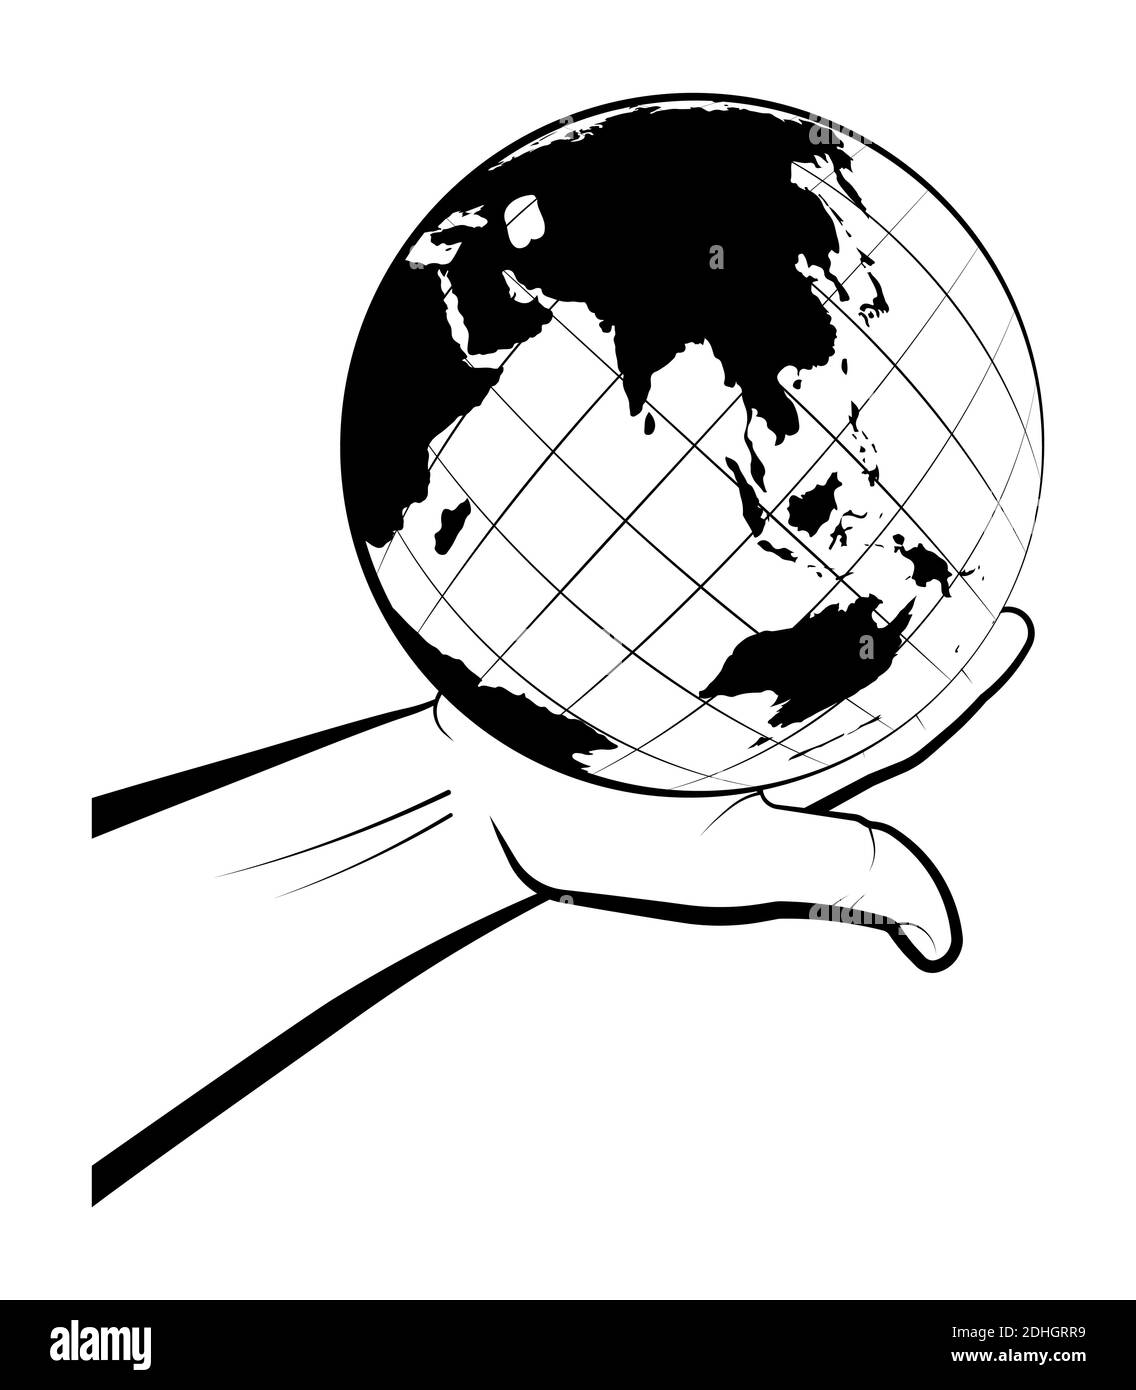 Der Mensch hält den Globus in seiner Hand. Auswahl eines Reiseziels. Globale Sicht der Welt. Isolierter Vektor auf weißem Hintergrund Stock Vektor